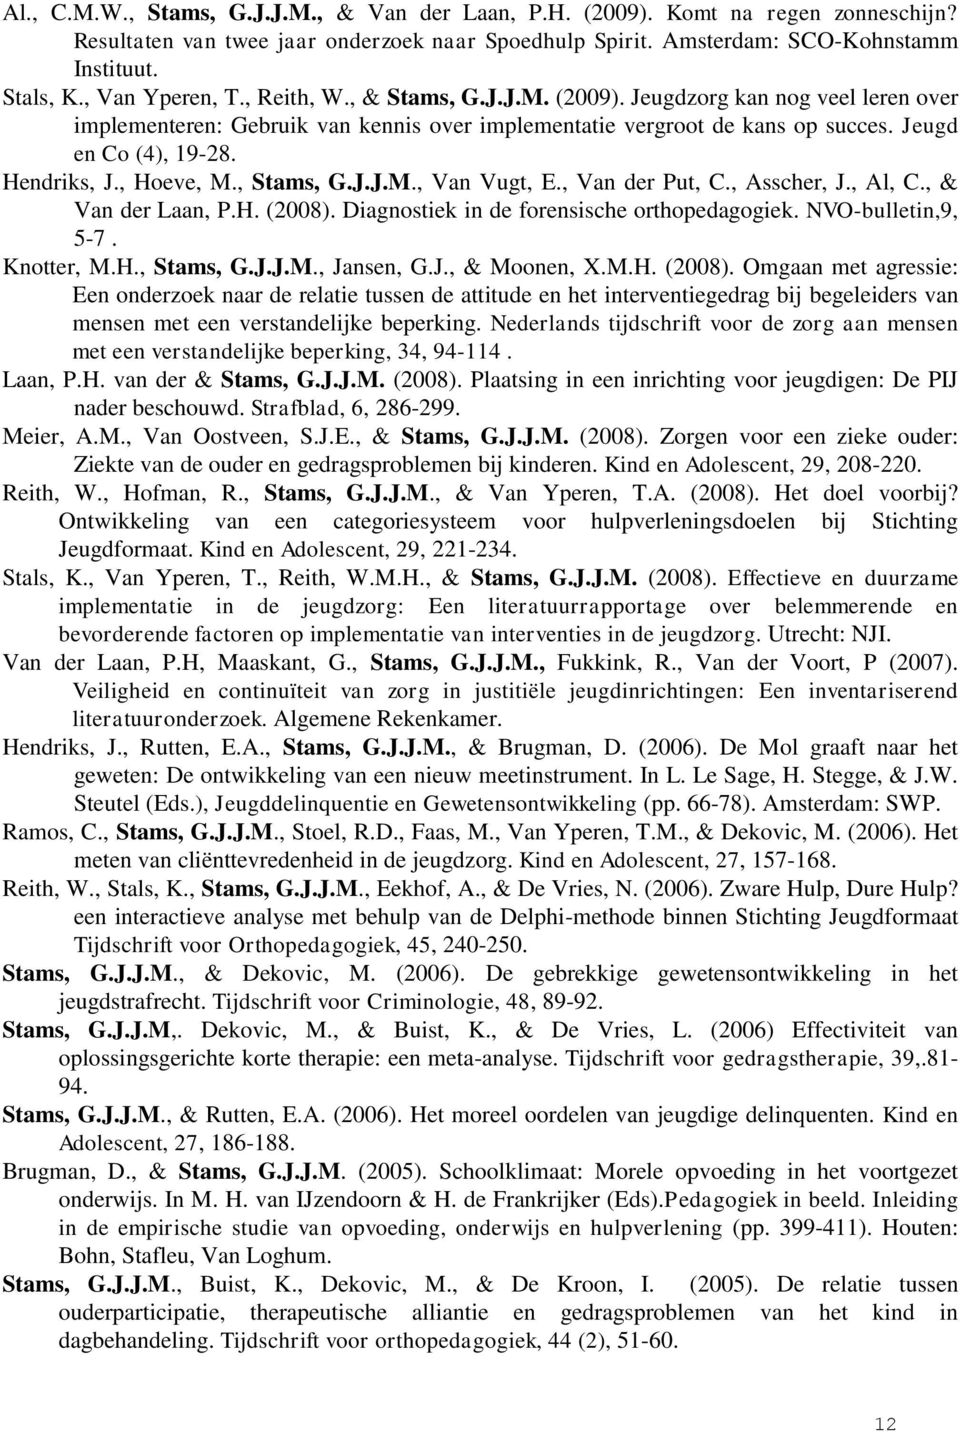 Hendriks, J., Hoeve, M., Stams, G.J.J.M., Van Vugt, E., Van der Put, C., Asscher, J., Al, C., & Van der Laan, P.H. (2008). Diagnostiek in de forensische orthopedagogiek. NVO-bulletin,9, 5-7.